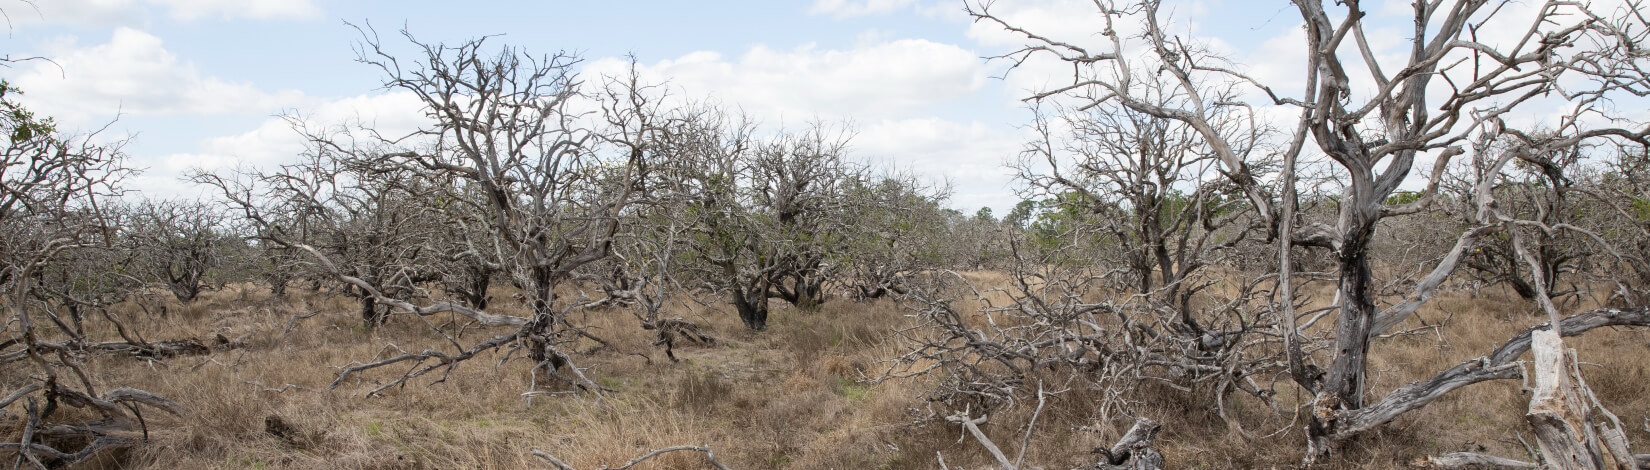 Dead citrus grove at the DeLuca Preserve